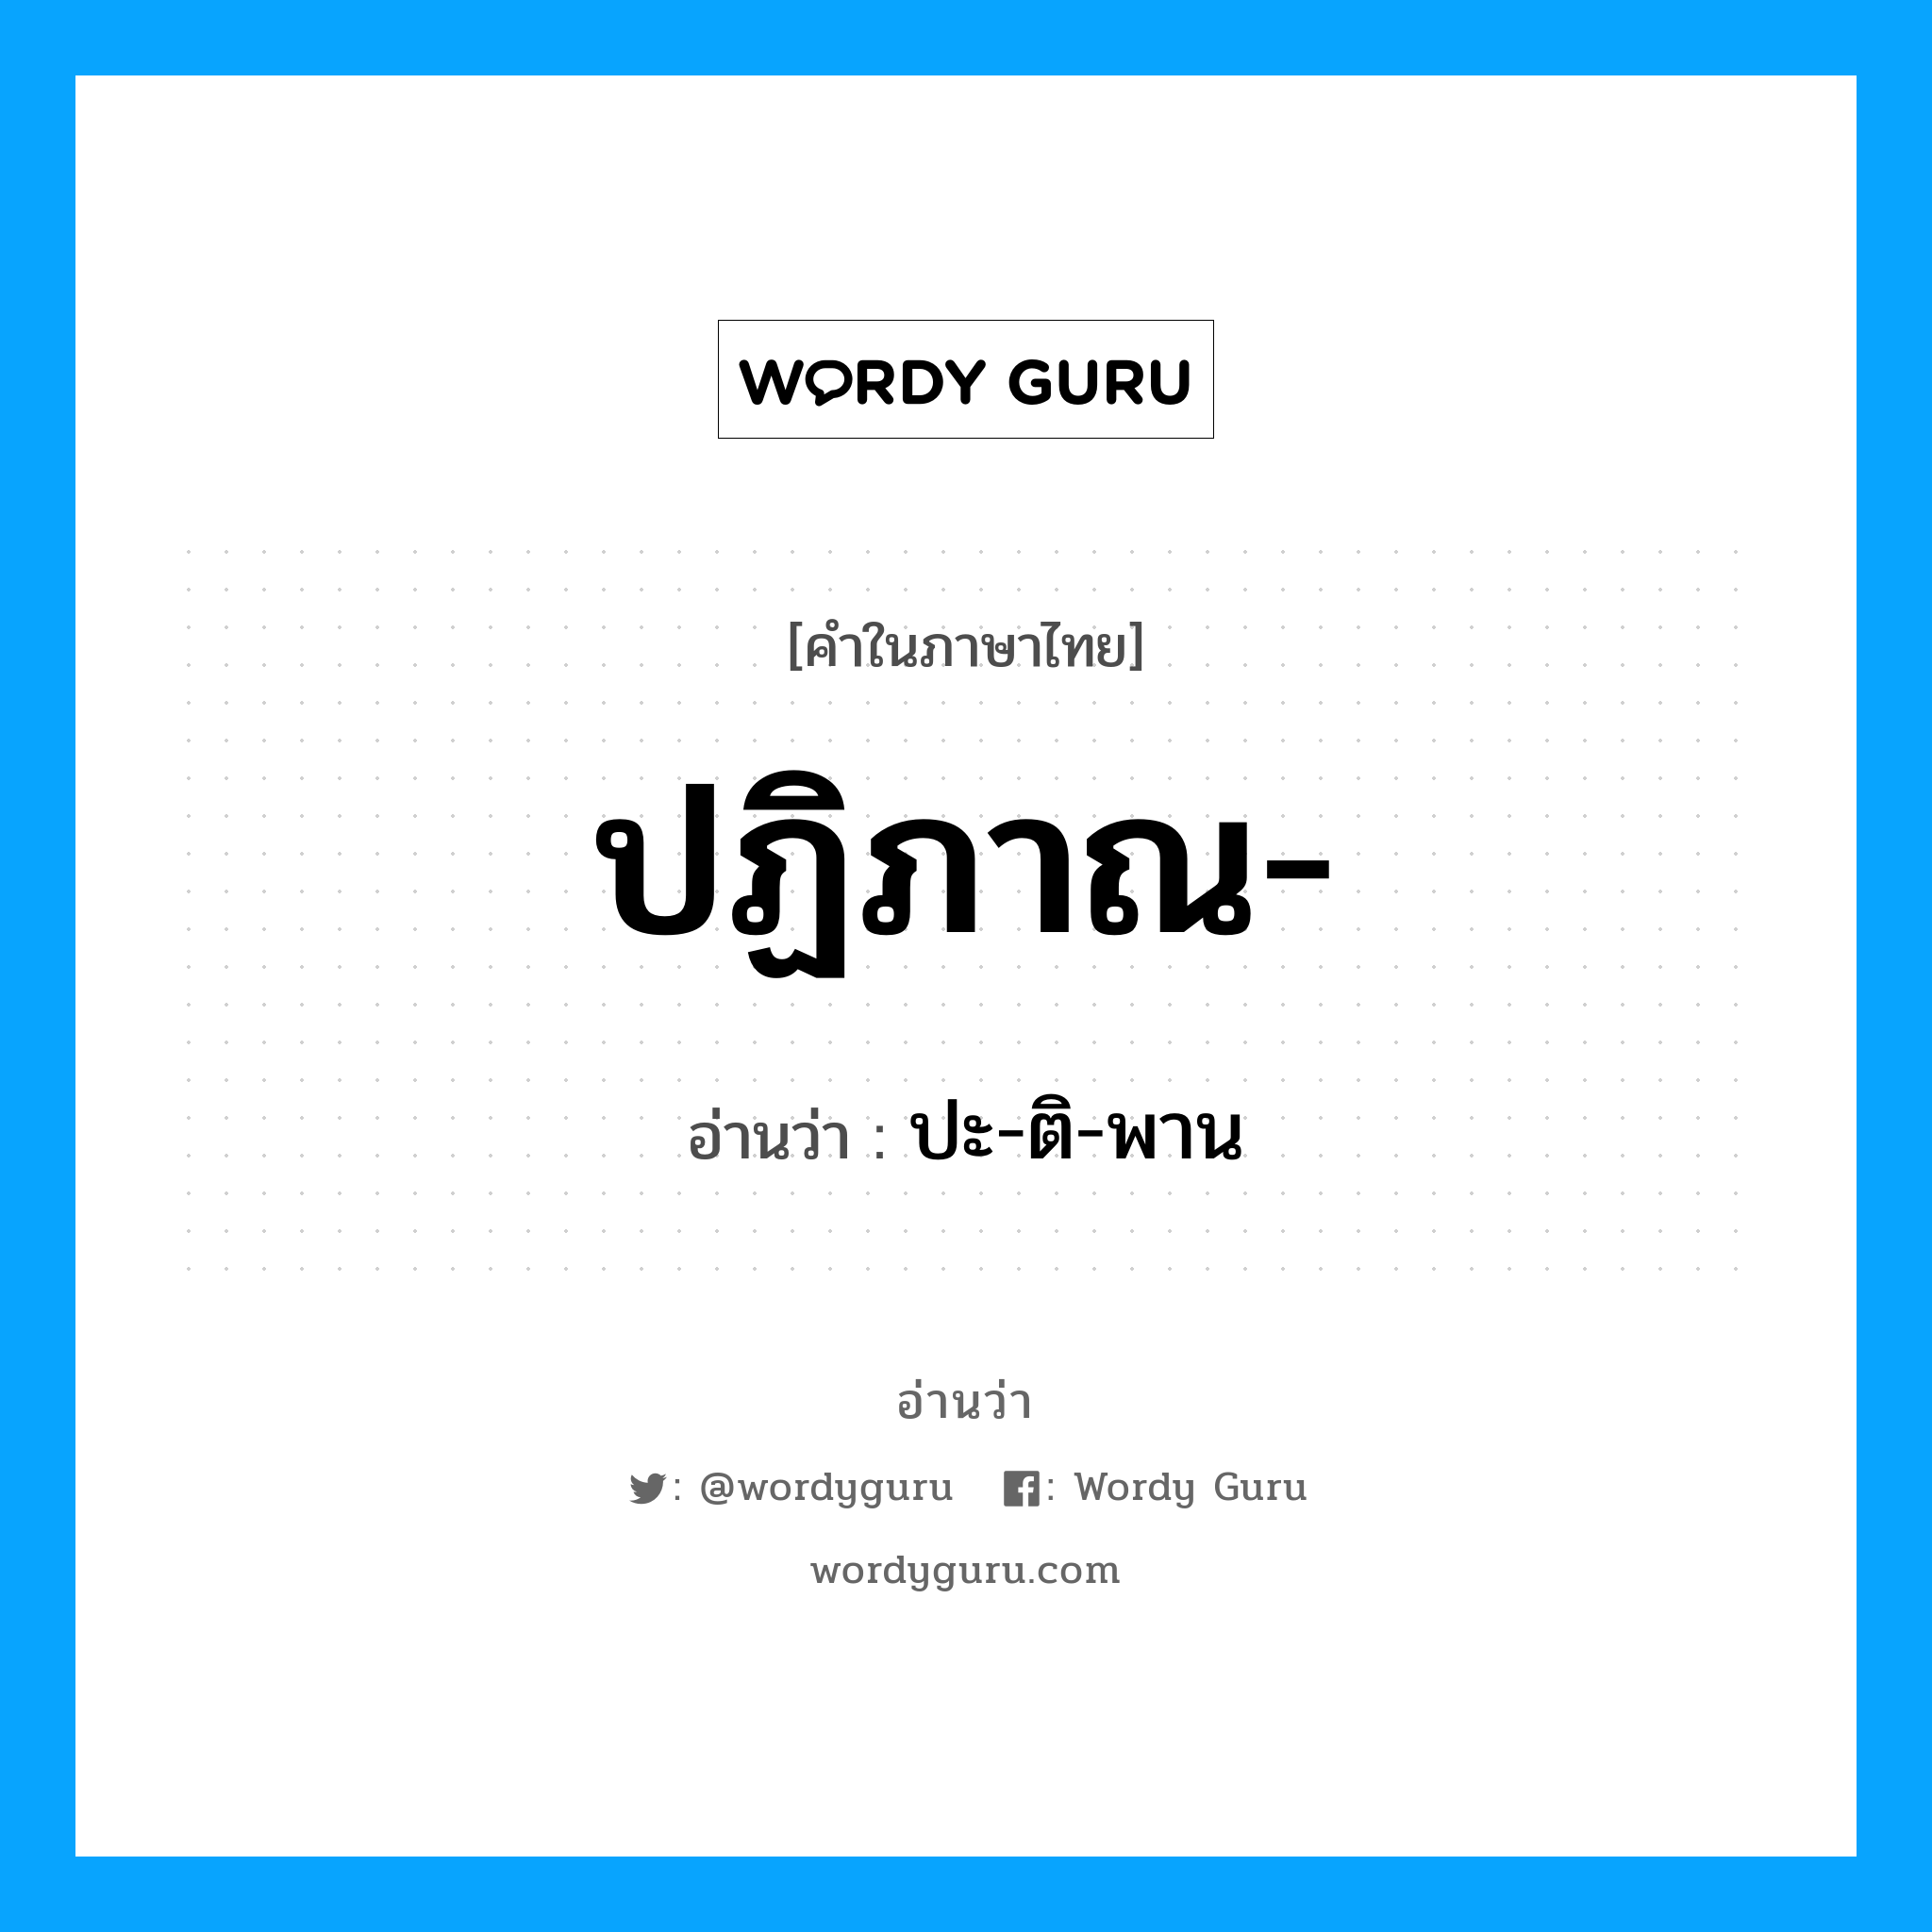 ปฏิภาณ- อ่านว่า?, คำในภาษาไทย ปฏิภาณ- อ่านว่า ปะ-ติ-พาน